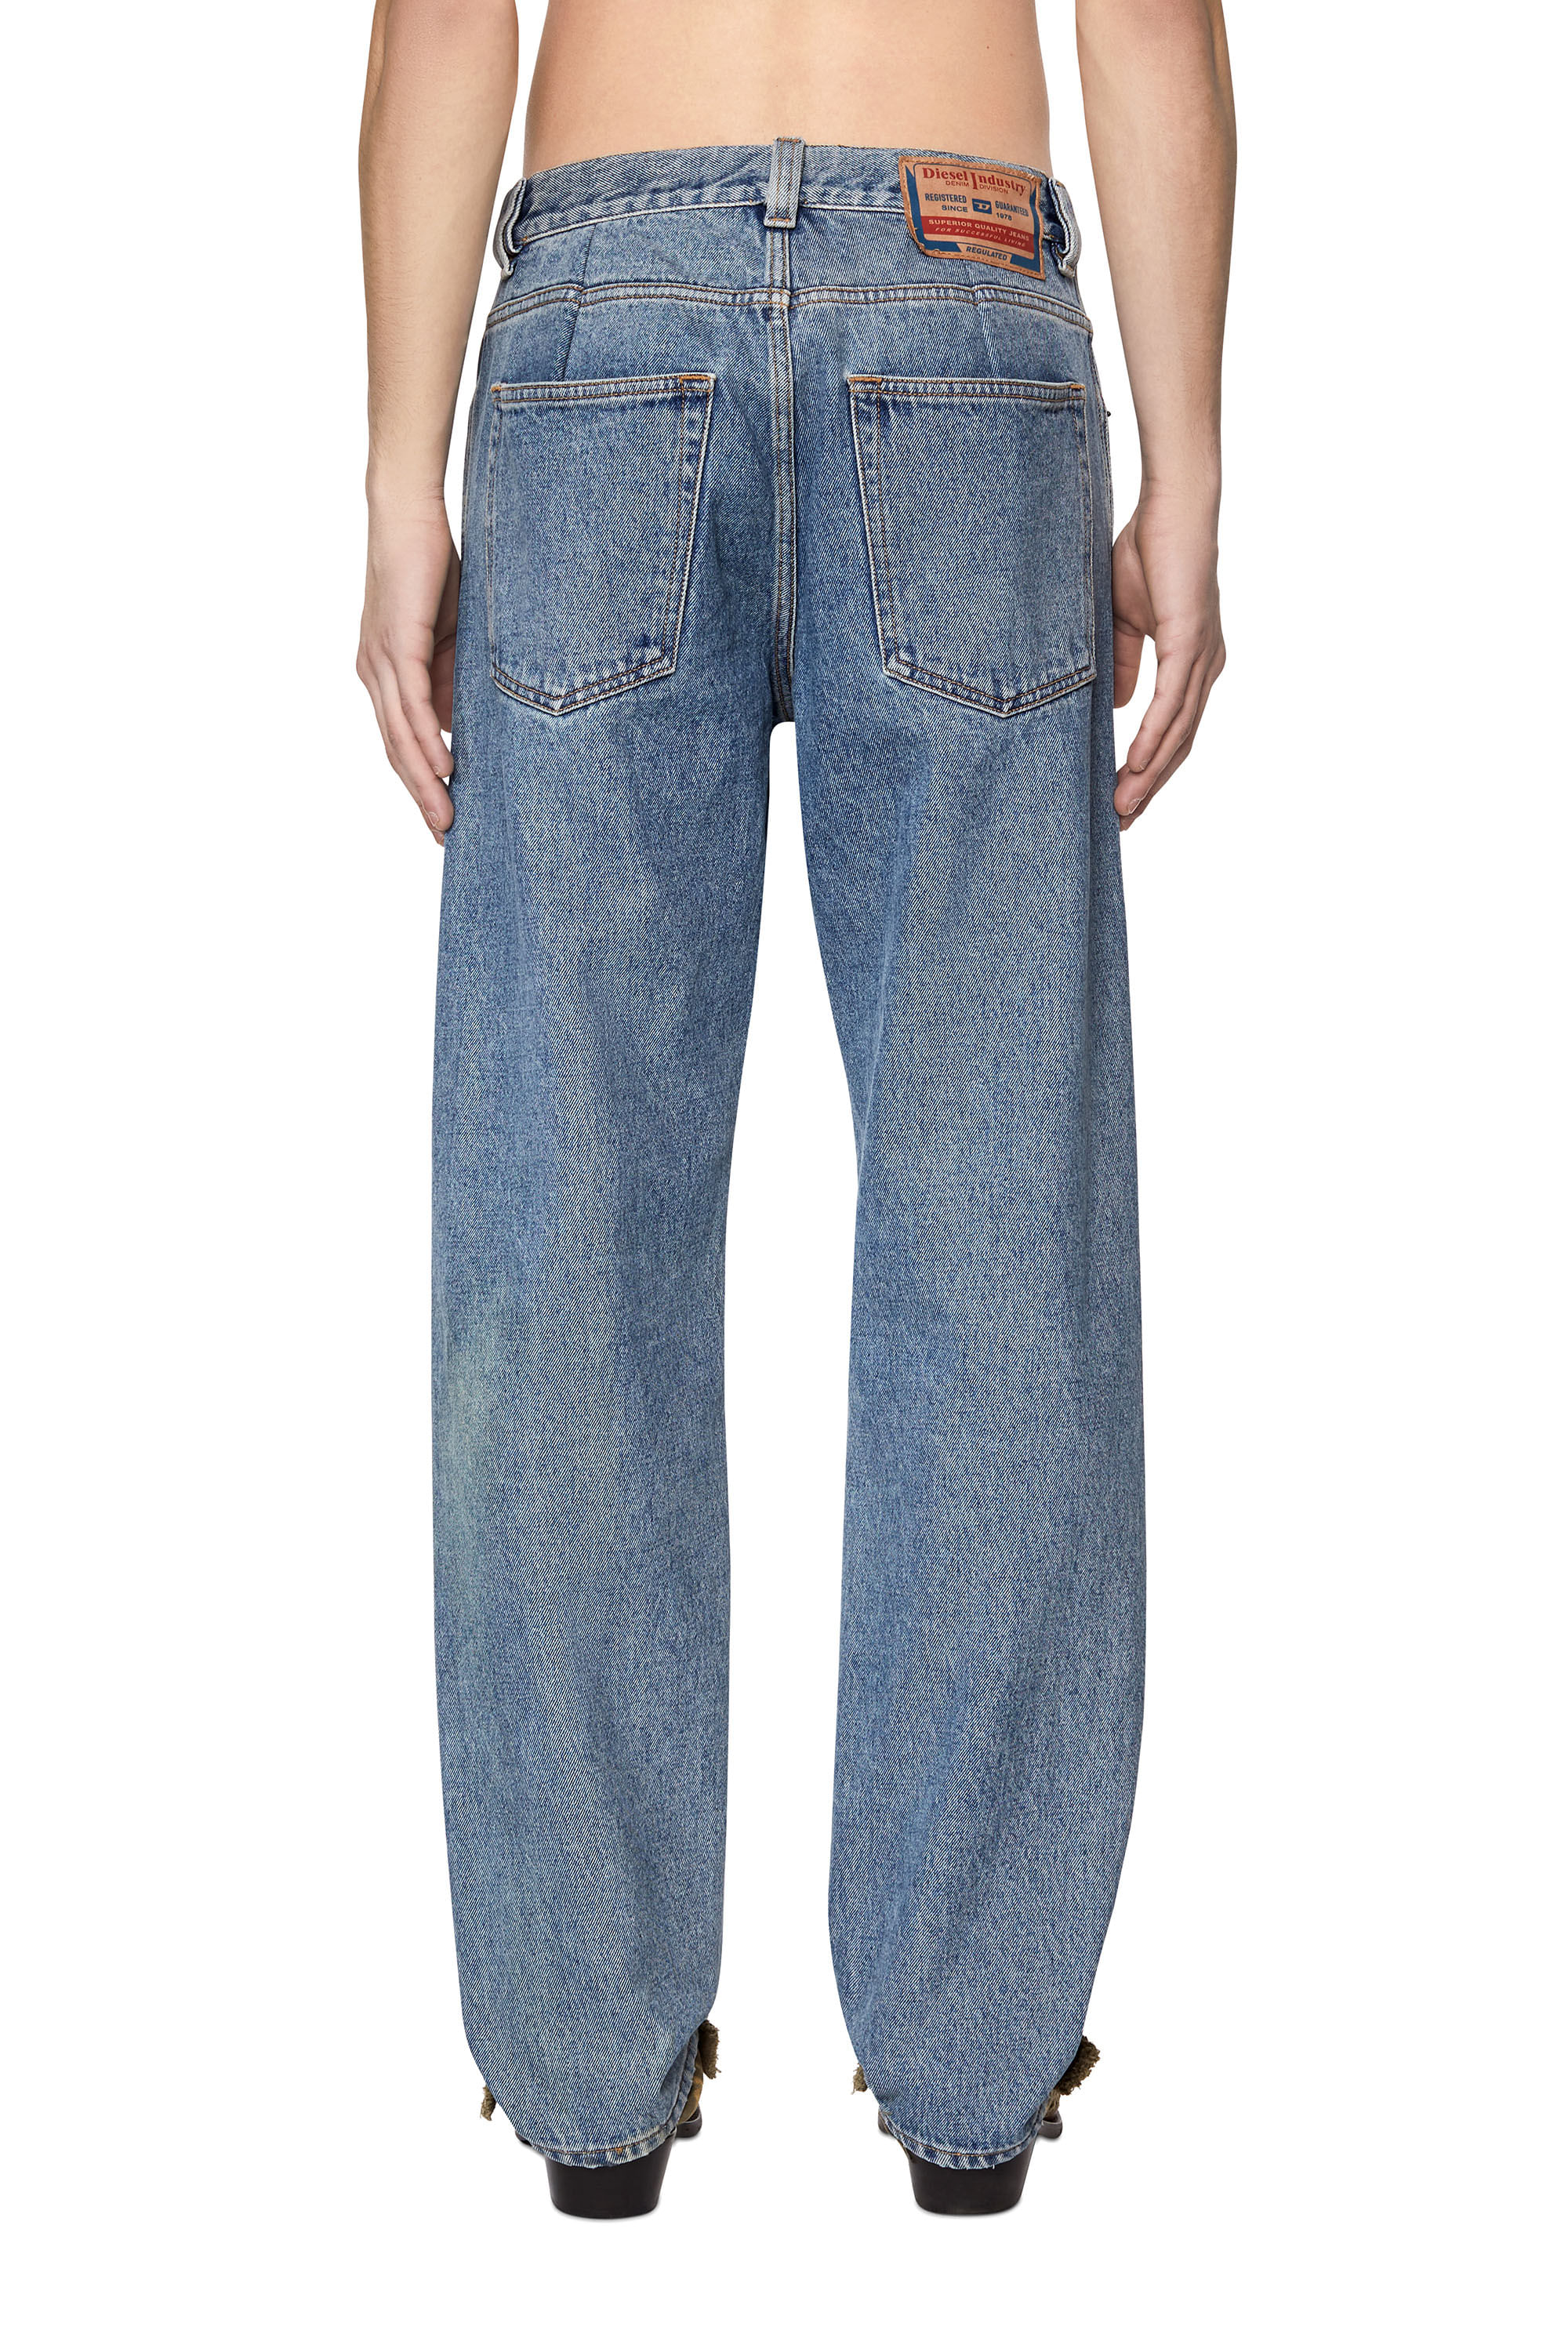 Pantalon Element Jeans Stretch Slim Hombre - 4x3